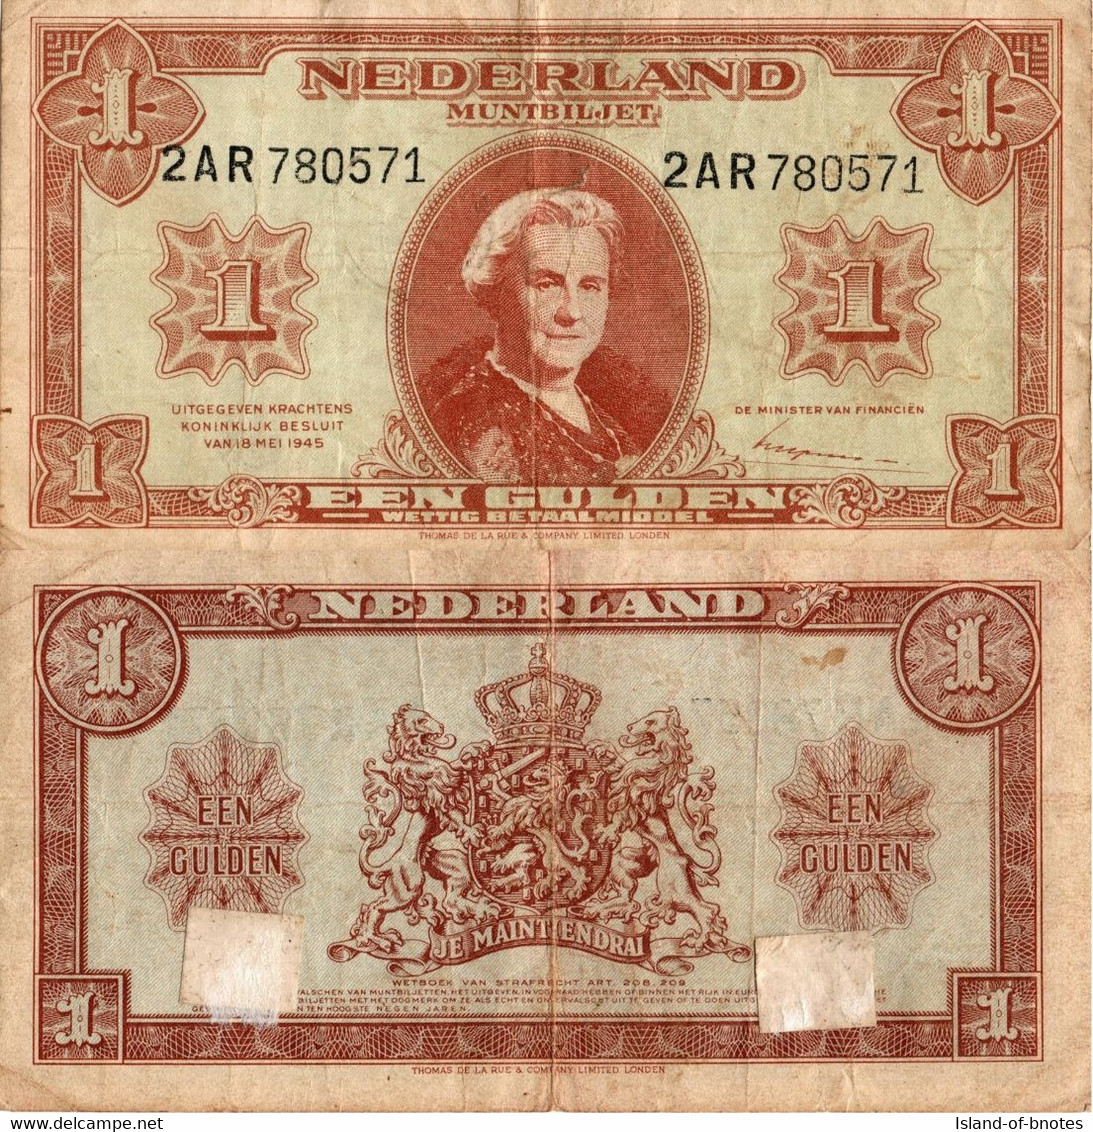 Netherlands / 1 Gulden / 1945 / P-70(a) / VF - 1  Florín Holandés (gulden)